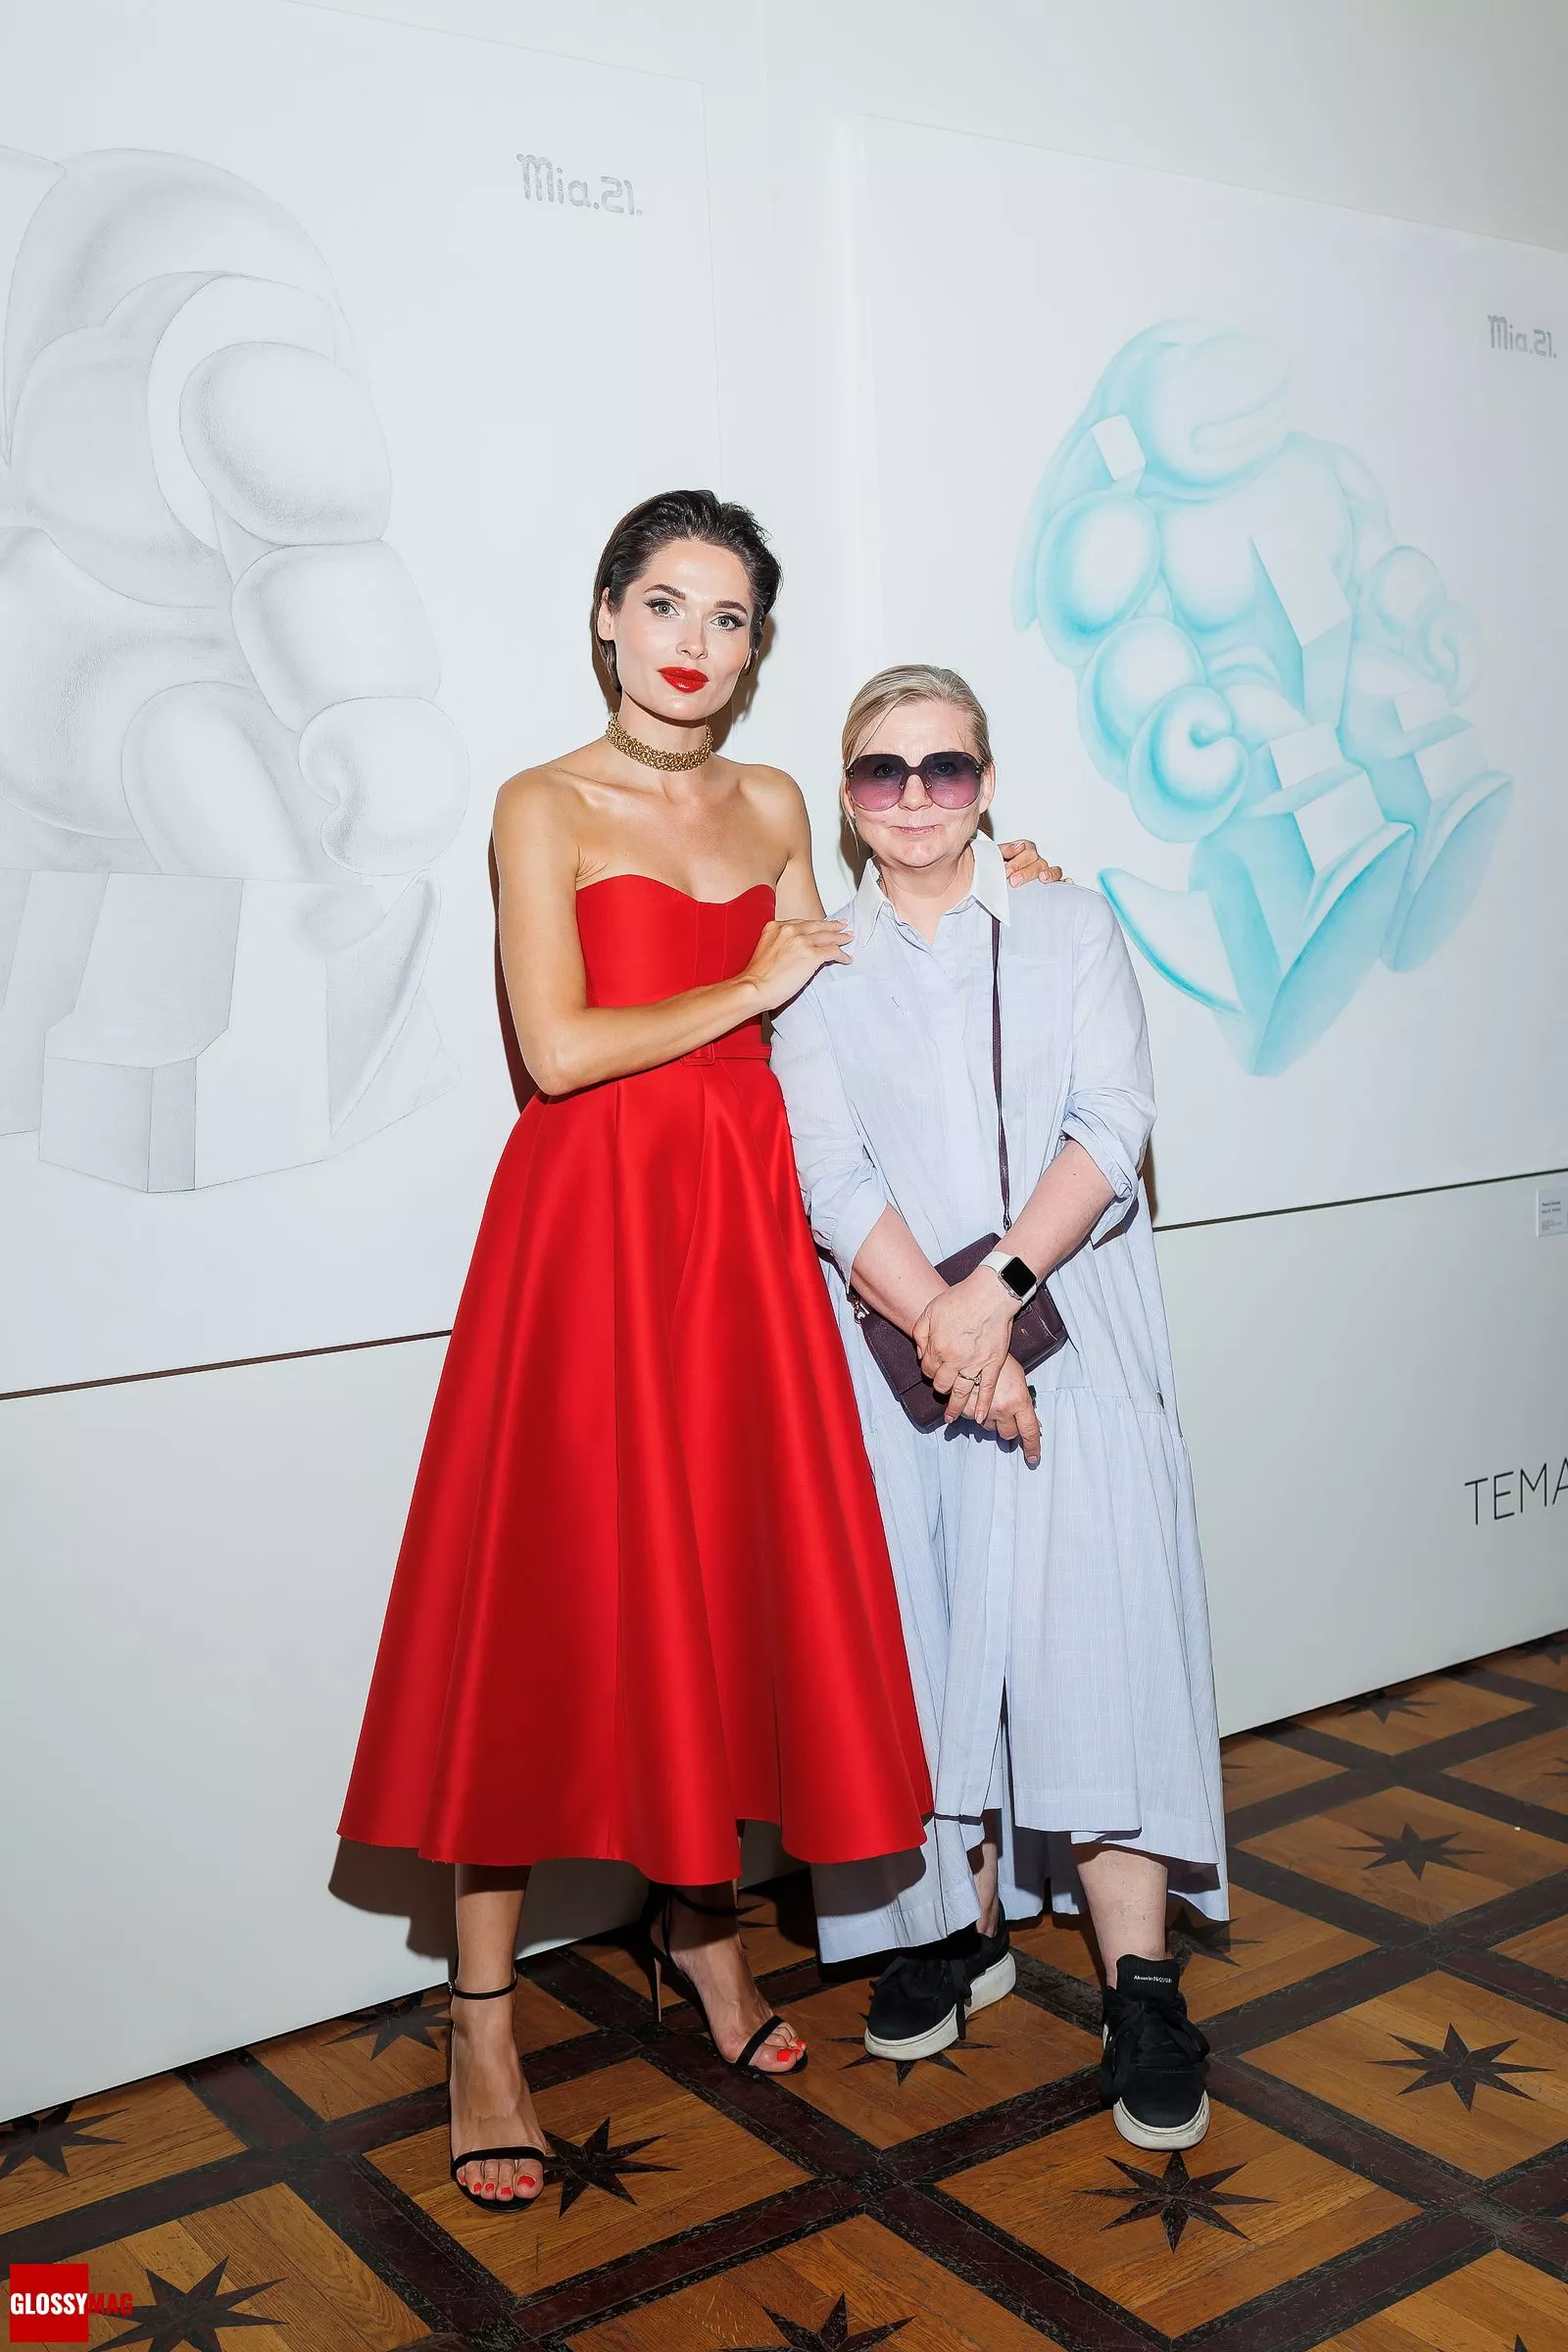 Полина Аскери и Виктория Андриянова на праздновании дня рождения Полины Аскери в музее-усадьбе Люблино, 12 июля 2022 г.